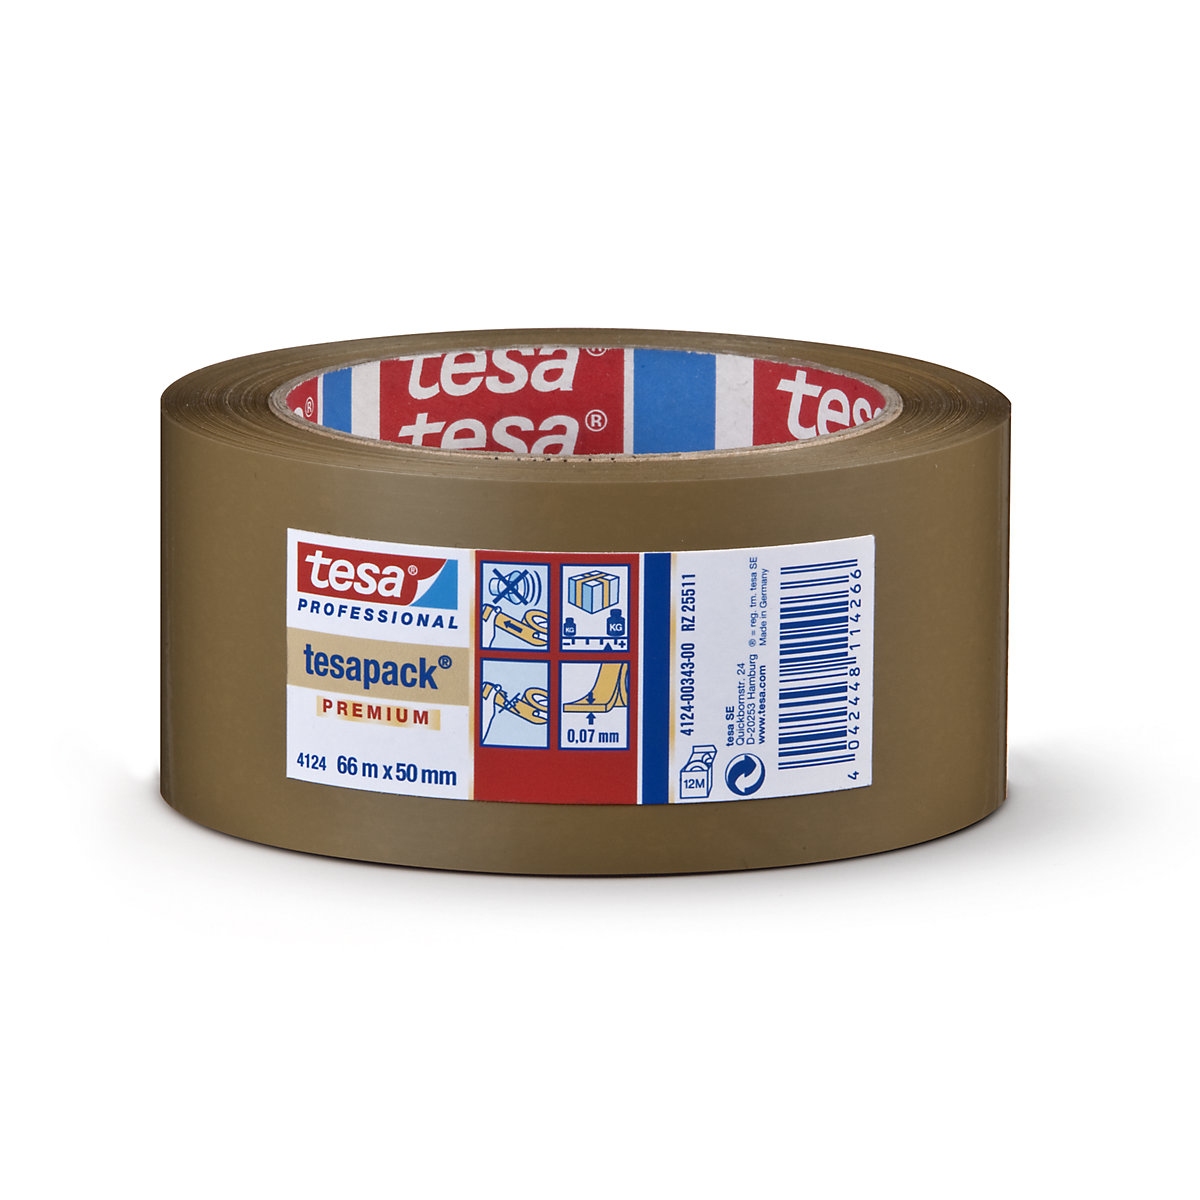 Cinta de embalaje de PVC – tesa, tesapack® 4124 Premium, UE 6 rollos, marrón, anchura de cinta 50 mm, a partir de 18 UE-2